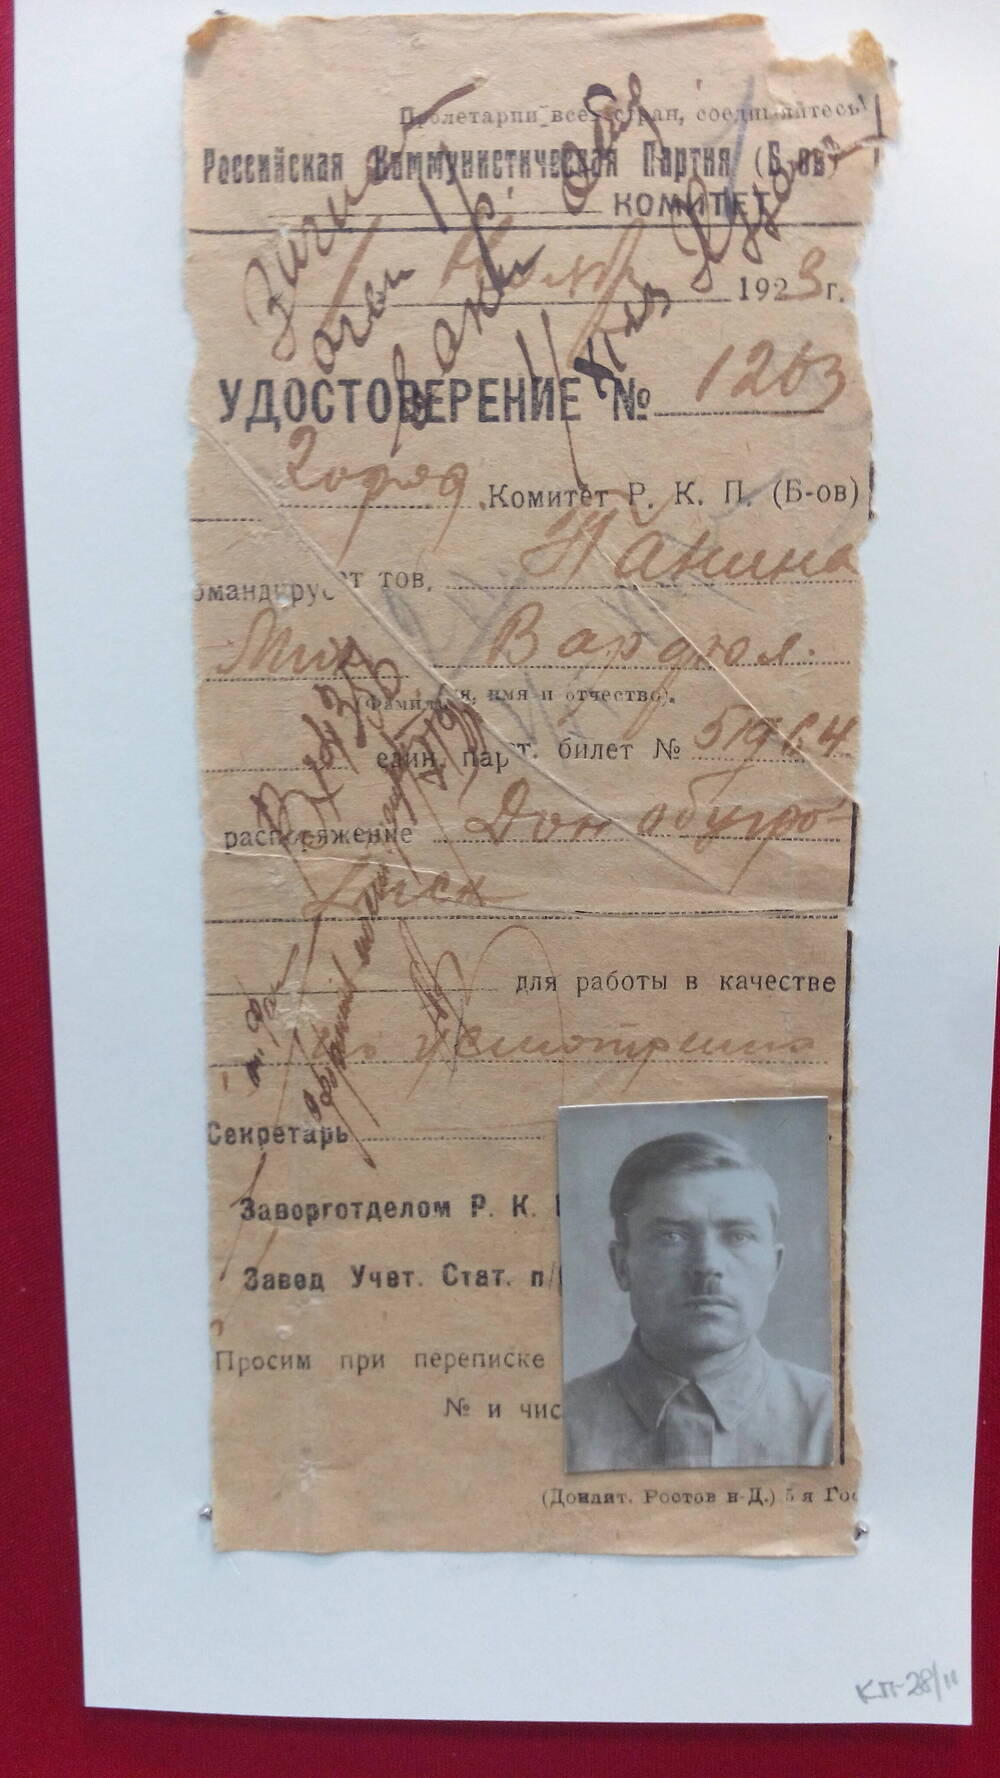 Удостоверение № 1263 городского комитета РКП(б), выданное Панину М.В. 1 ноября 1923 г.